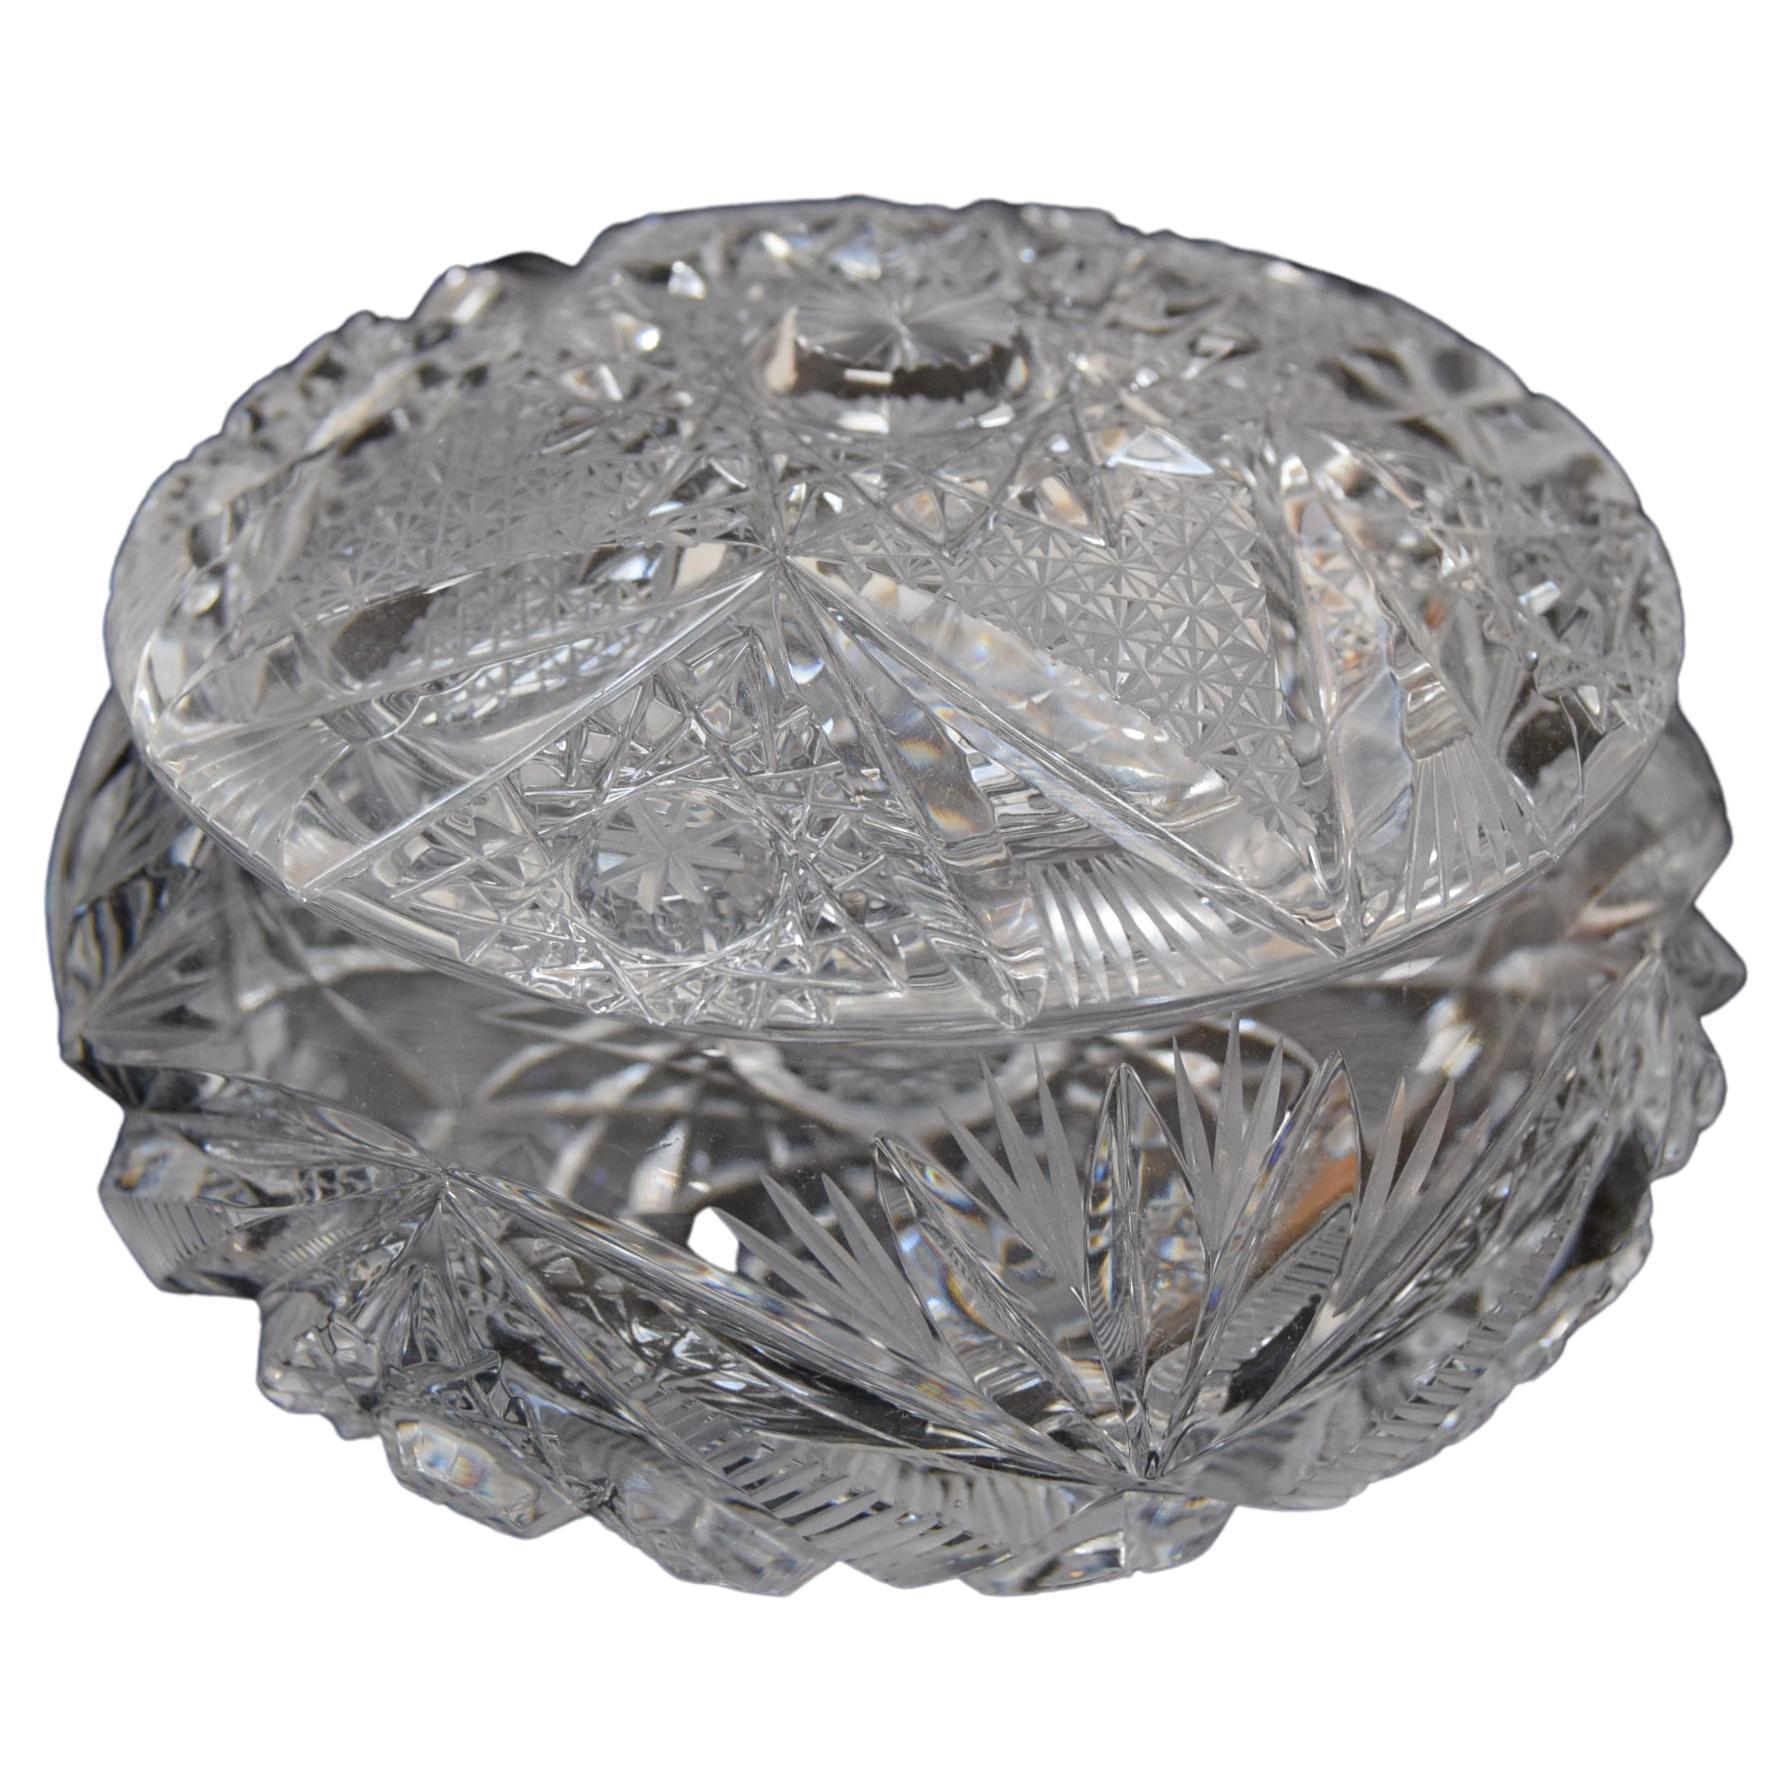 Seltene Vintage-Zuckerschale aus geschliffenem Kristallglas, Bohemia in den 1960er Jahren. 